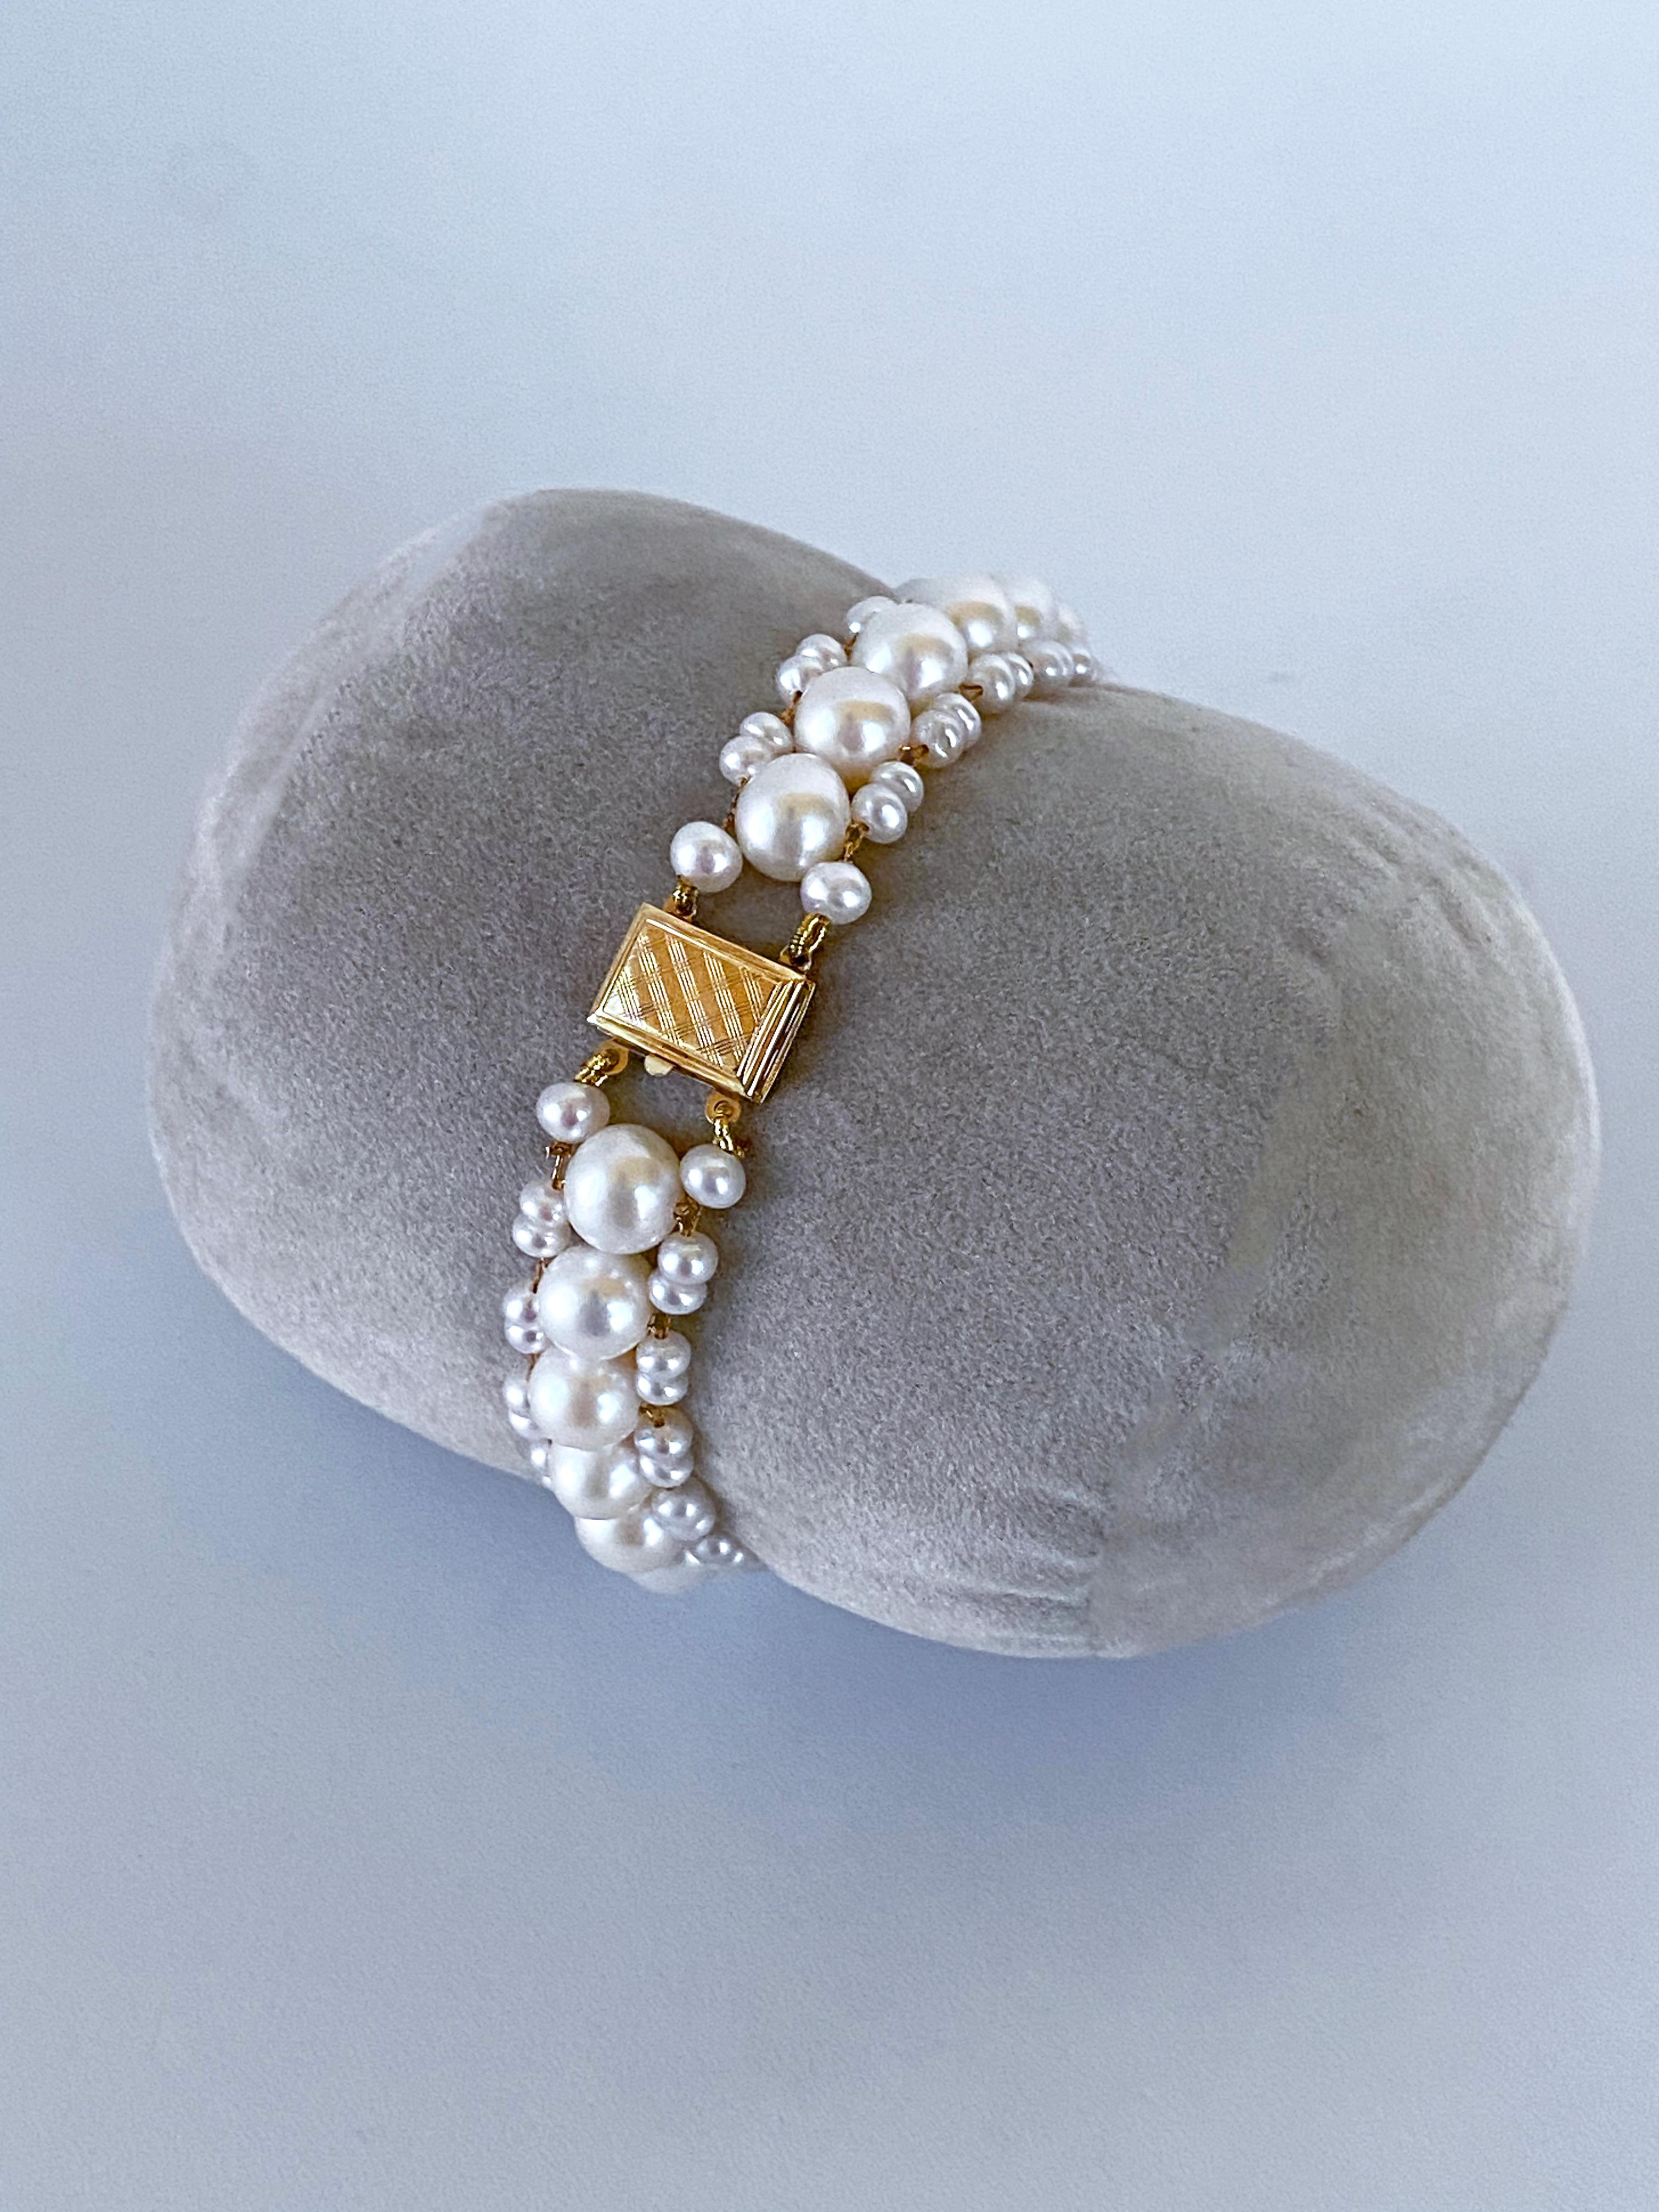 Magnifique, simple et élégante pièce de Marina J. Ce bracelet est composé de perles blanches de culture avec un doux éclat irisé. Le fil d'or est utilisé pour tisser les perles en un motif en forme de colonne, qui s'harmonise parfaitement avec